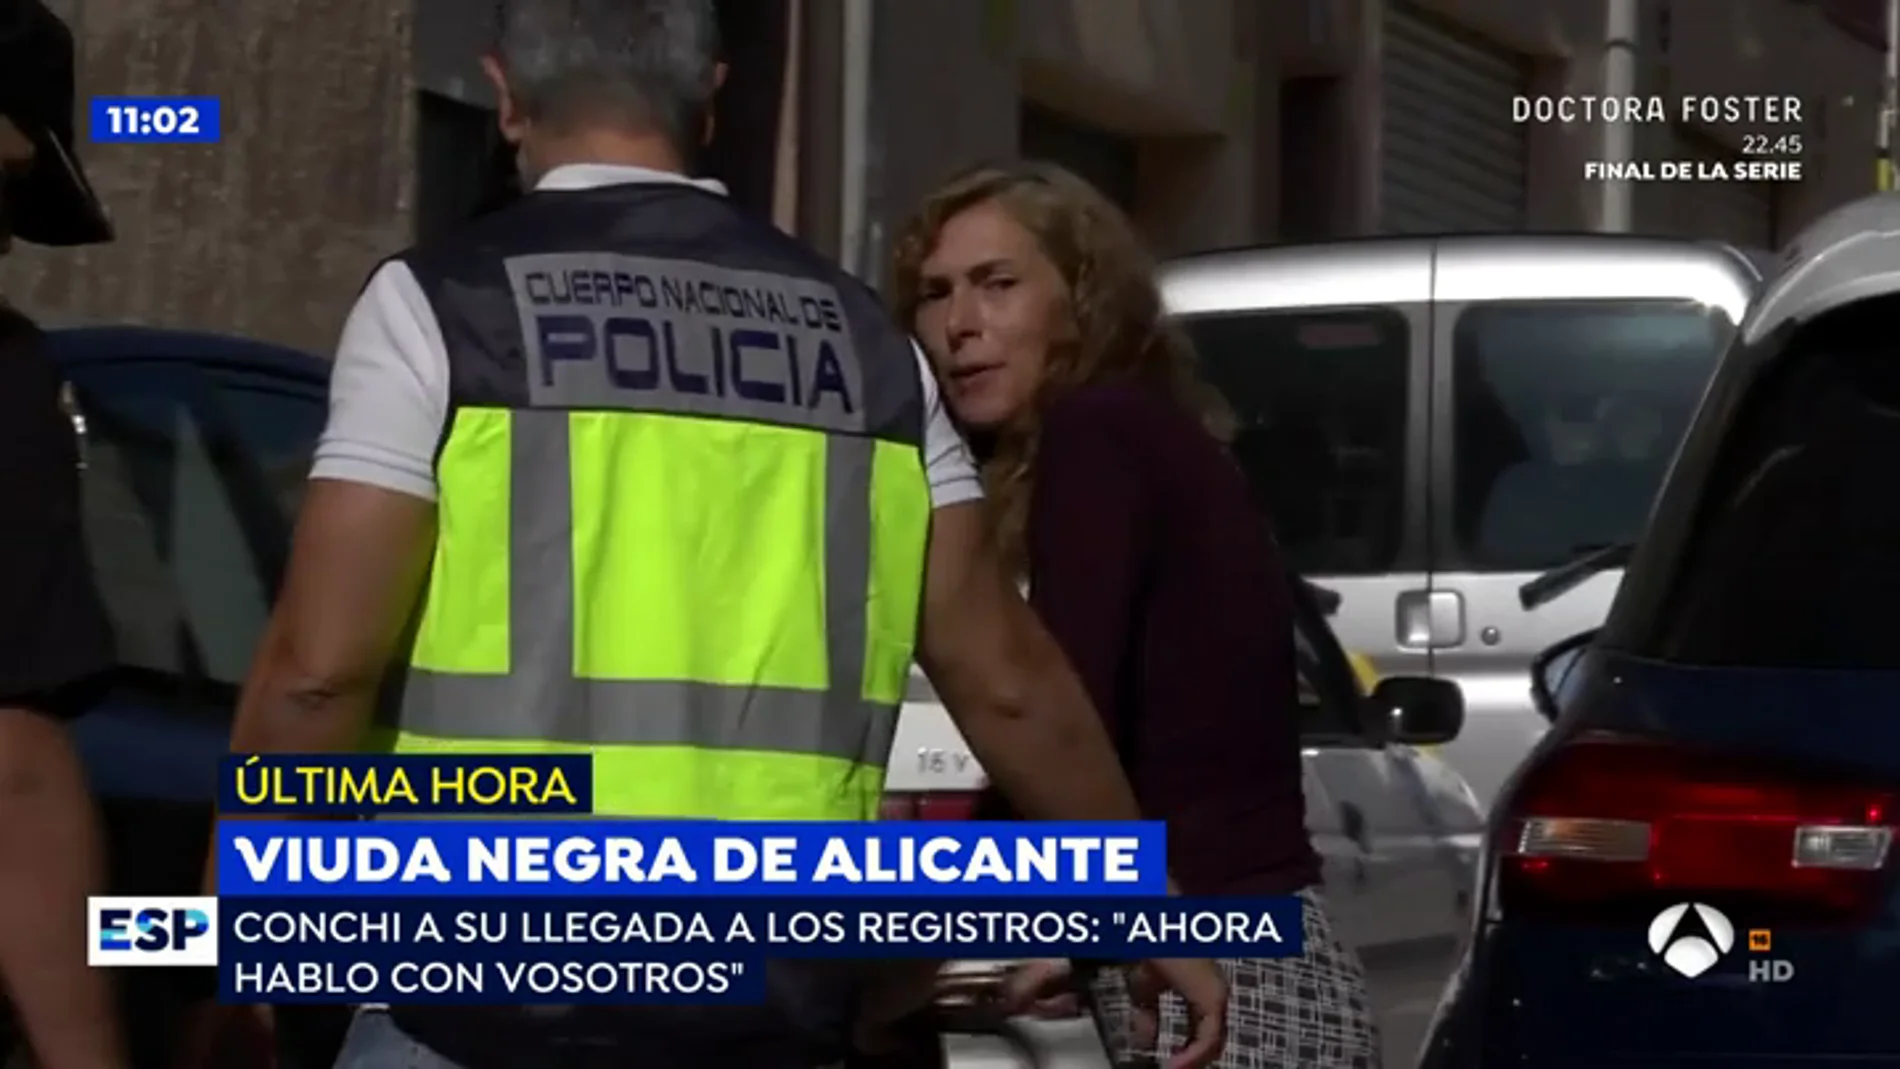 Primeras palabras de la 'viuda negra' de Alicante en televisión: "Yo no maté a mi marido, ahora hablo con vosotros"